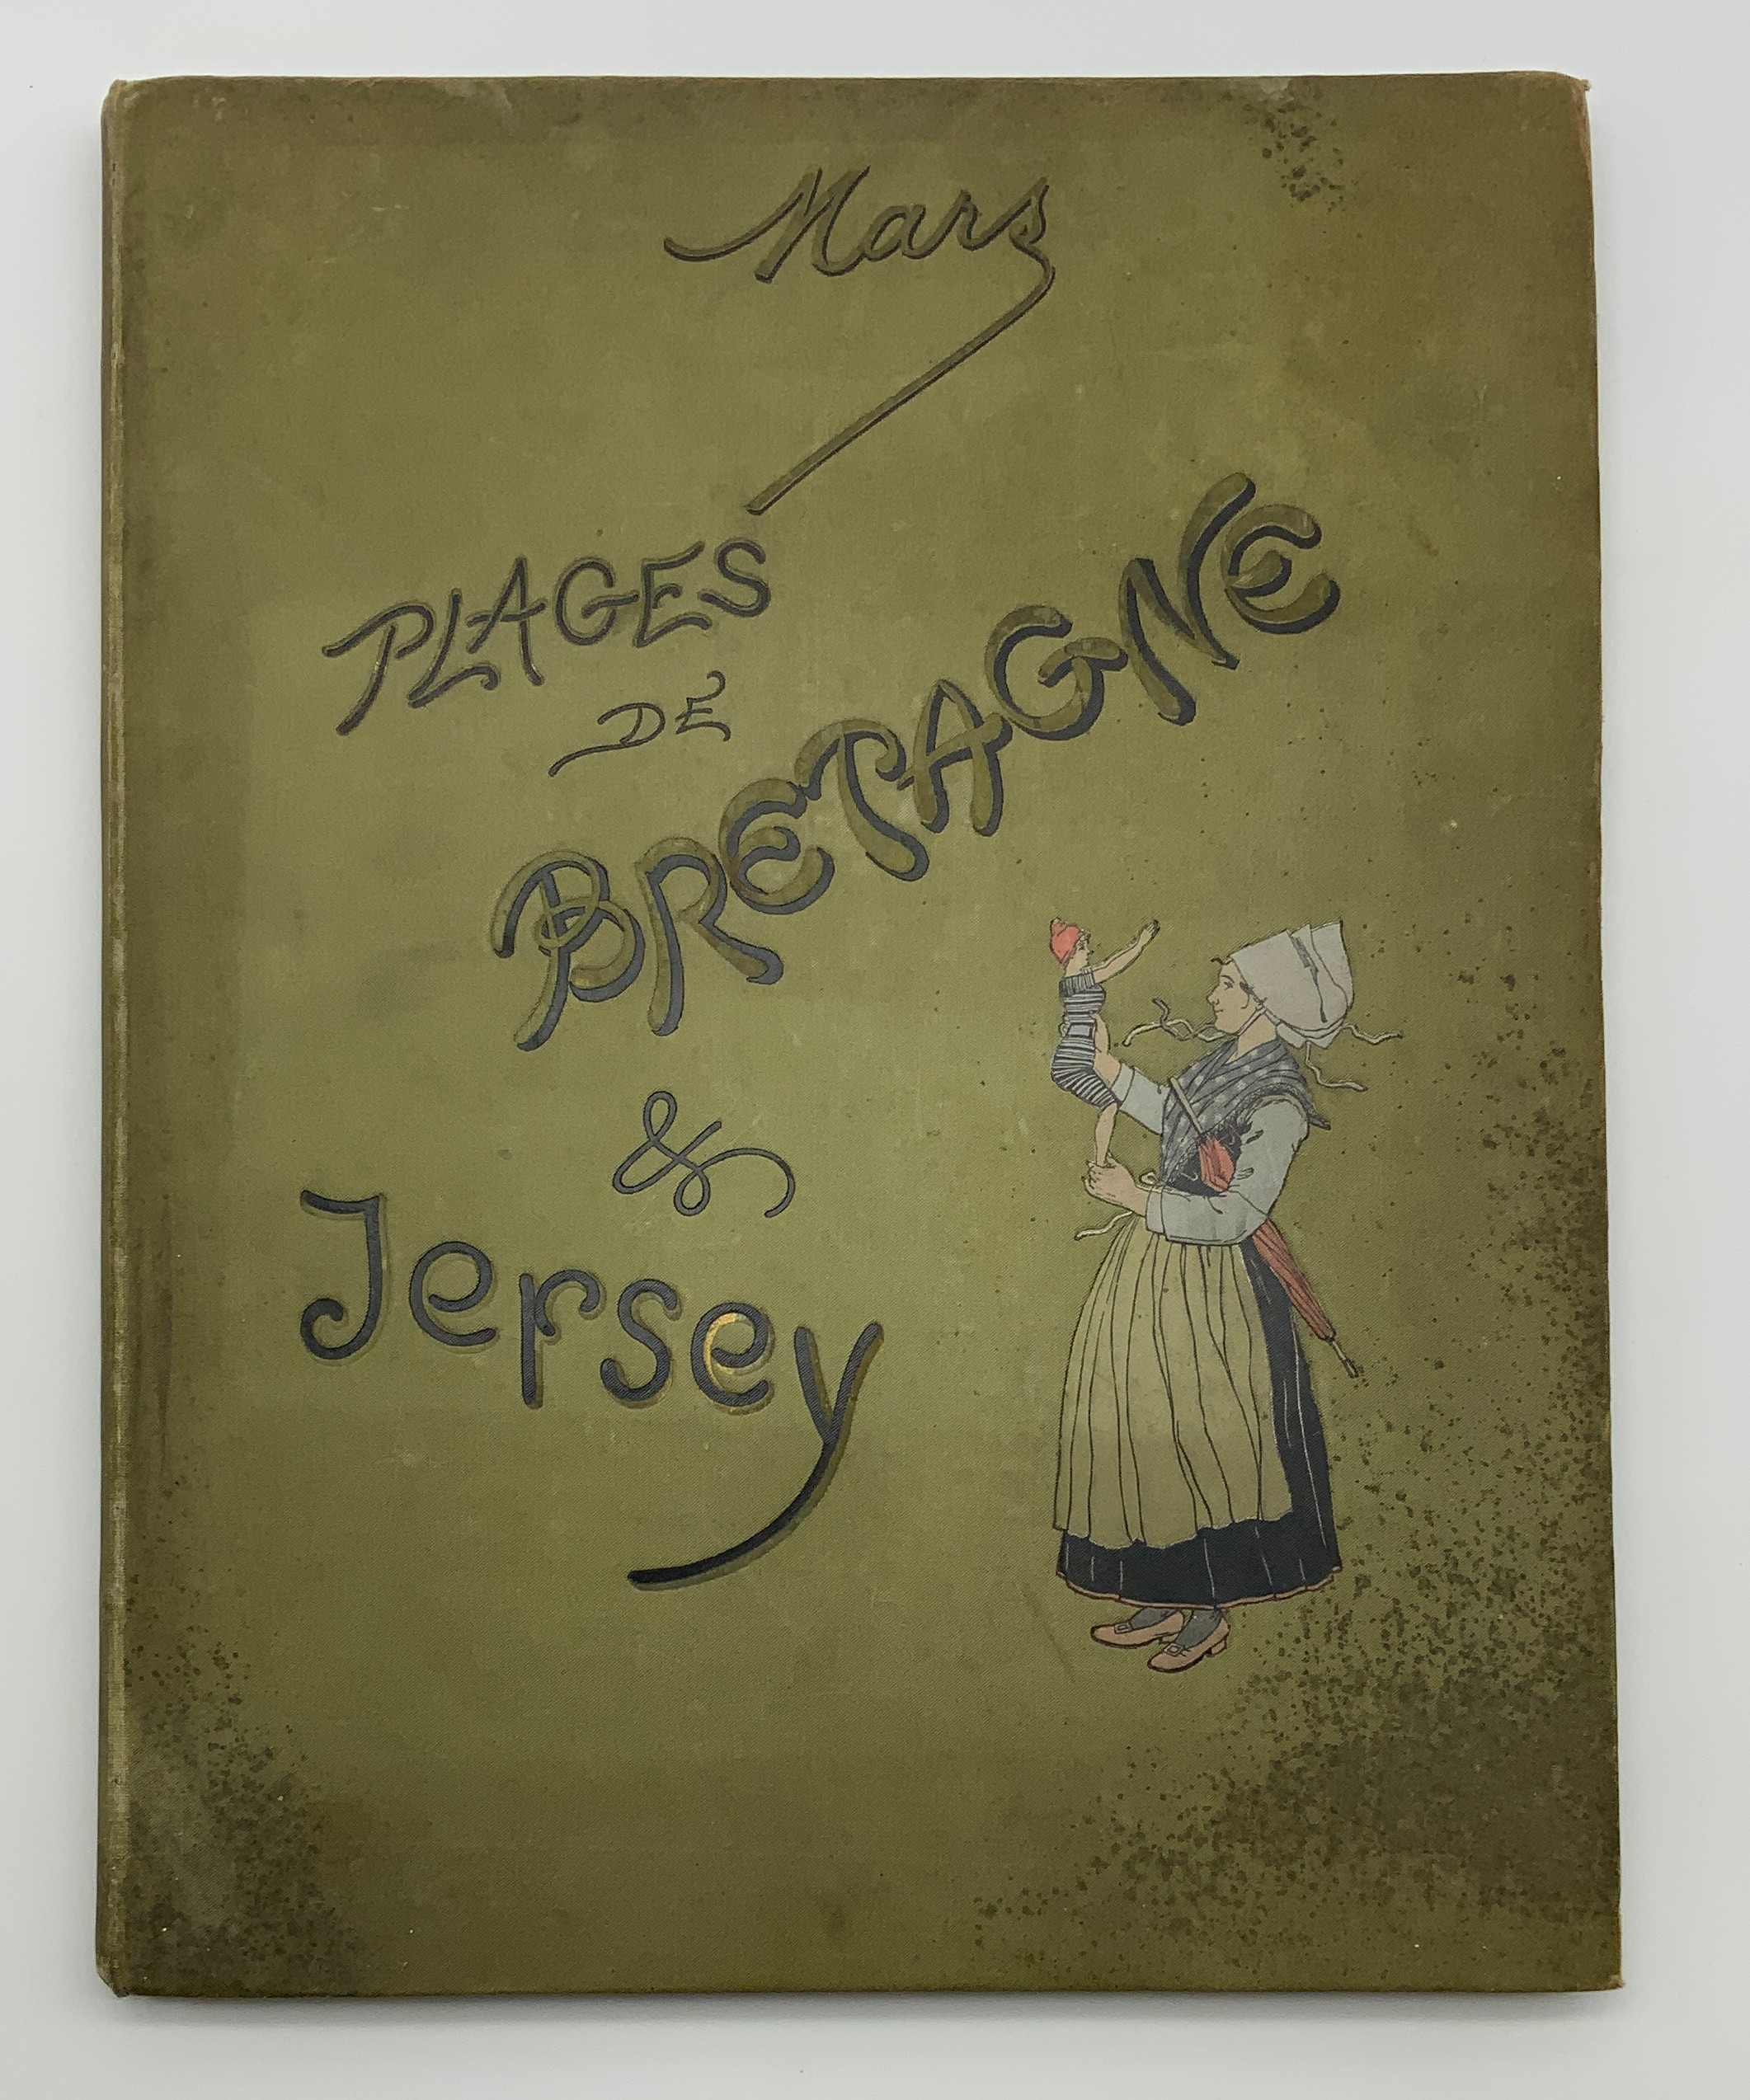 PLAGES DE BRETAGNE & JERSEY - AS FOUND